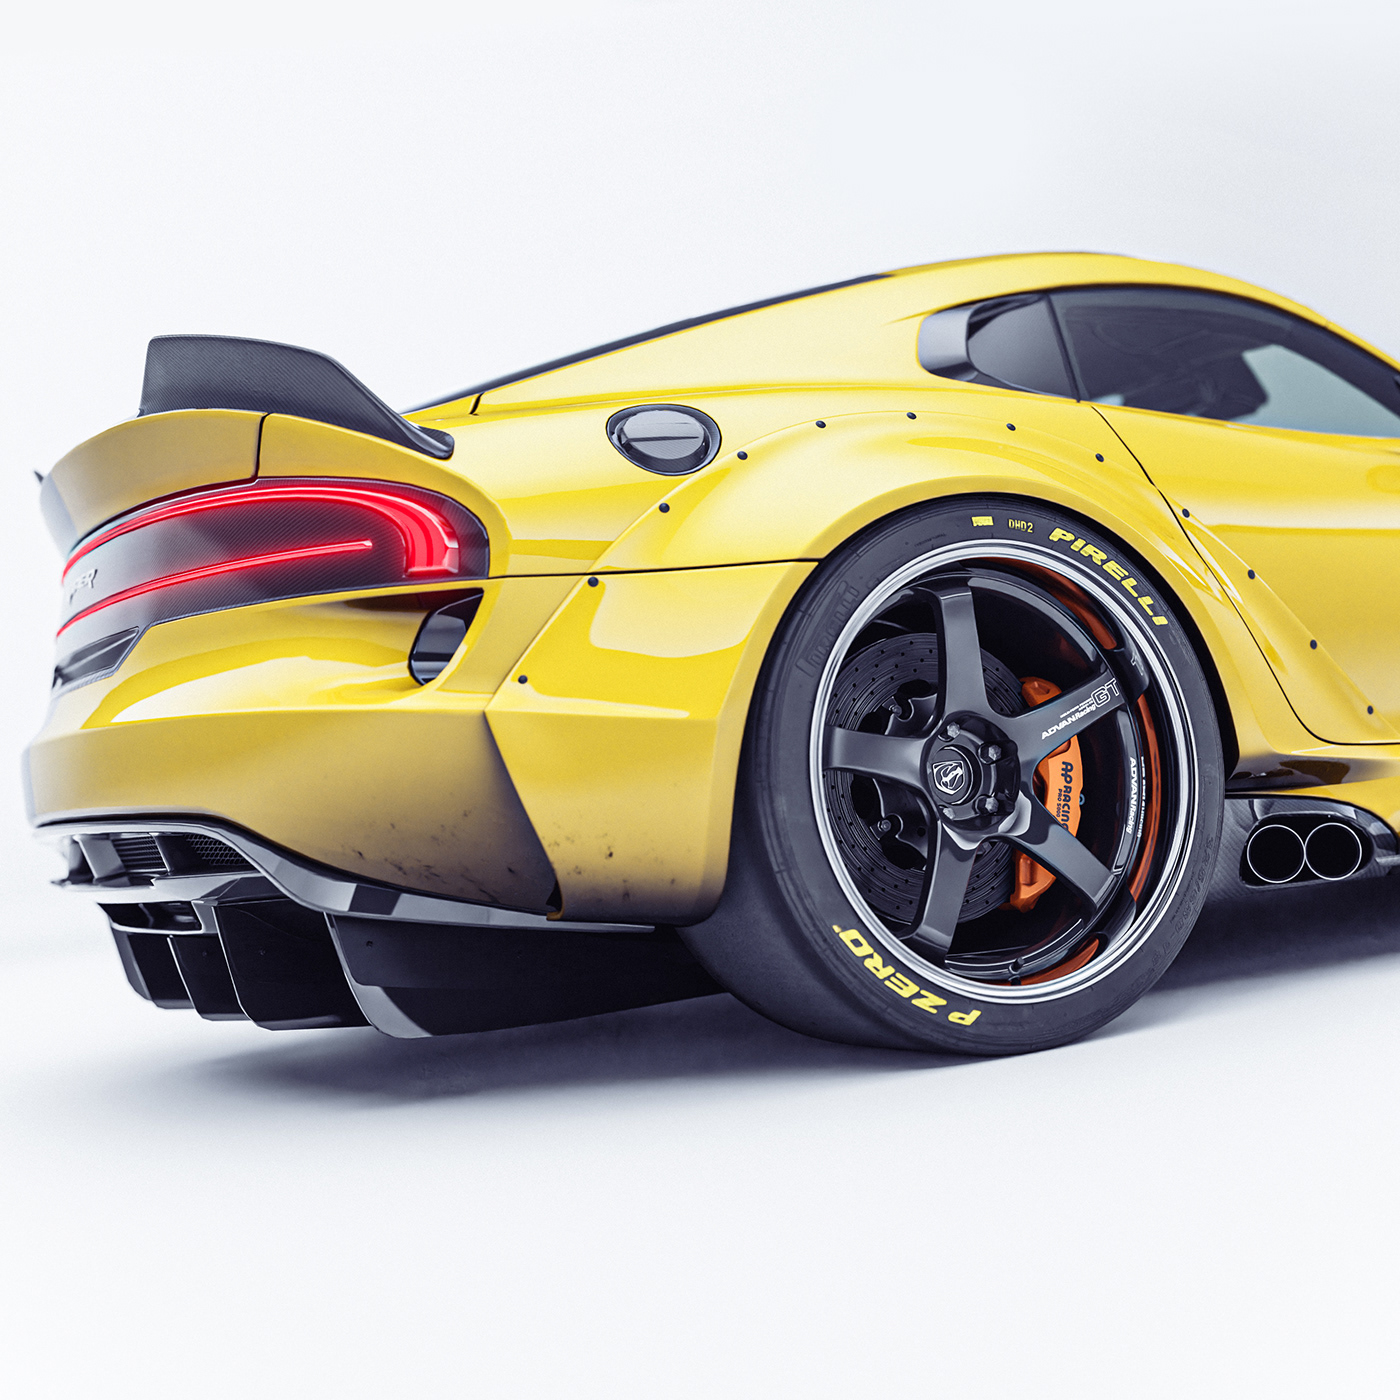 Automotive design blender3d cgiart Cycles render dodge JDM Racing serafinistile tokyodrift Viper